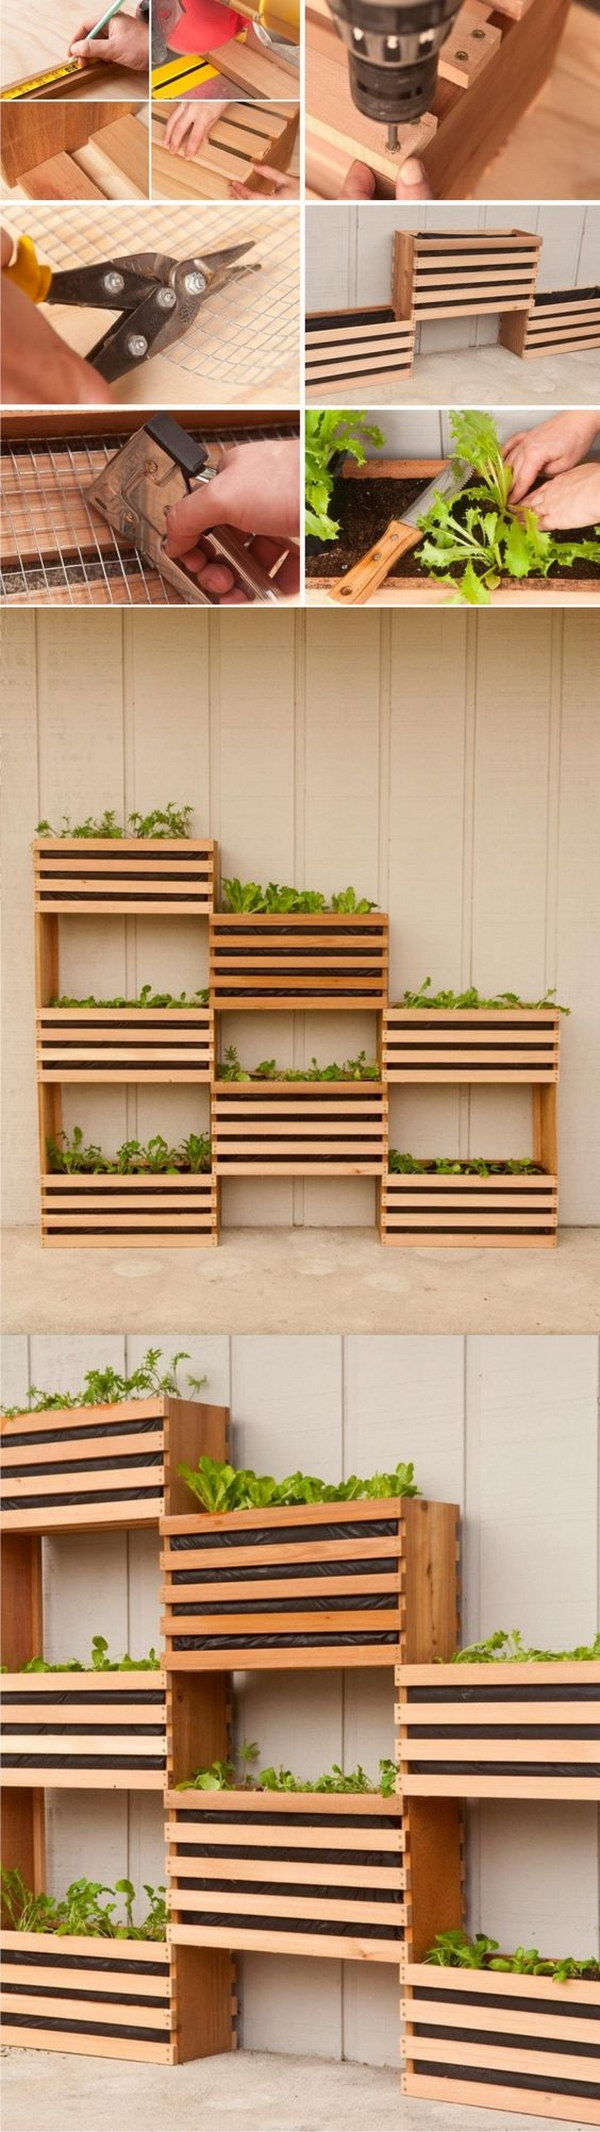 DIY Vertical Vegetable Garden 